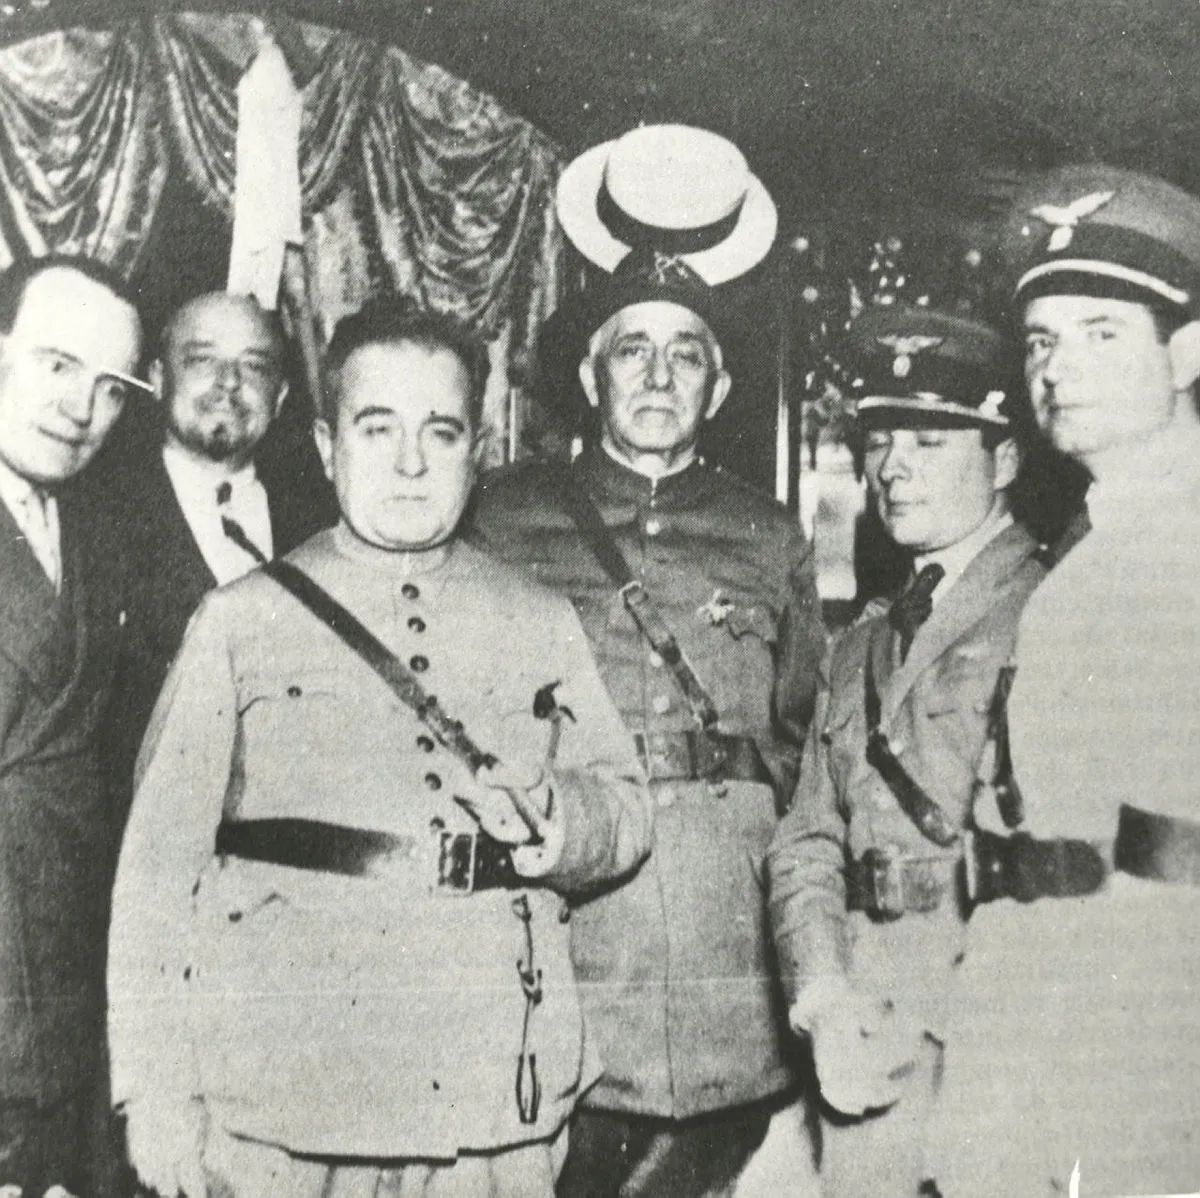 Getúlio Vargas tomou posse para um governo provisório em 3 de novembro de 1930 após a vitória do seu grupo na chamada Revolução de 1930